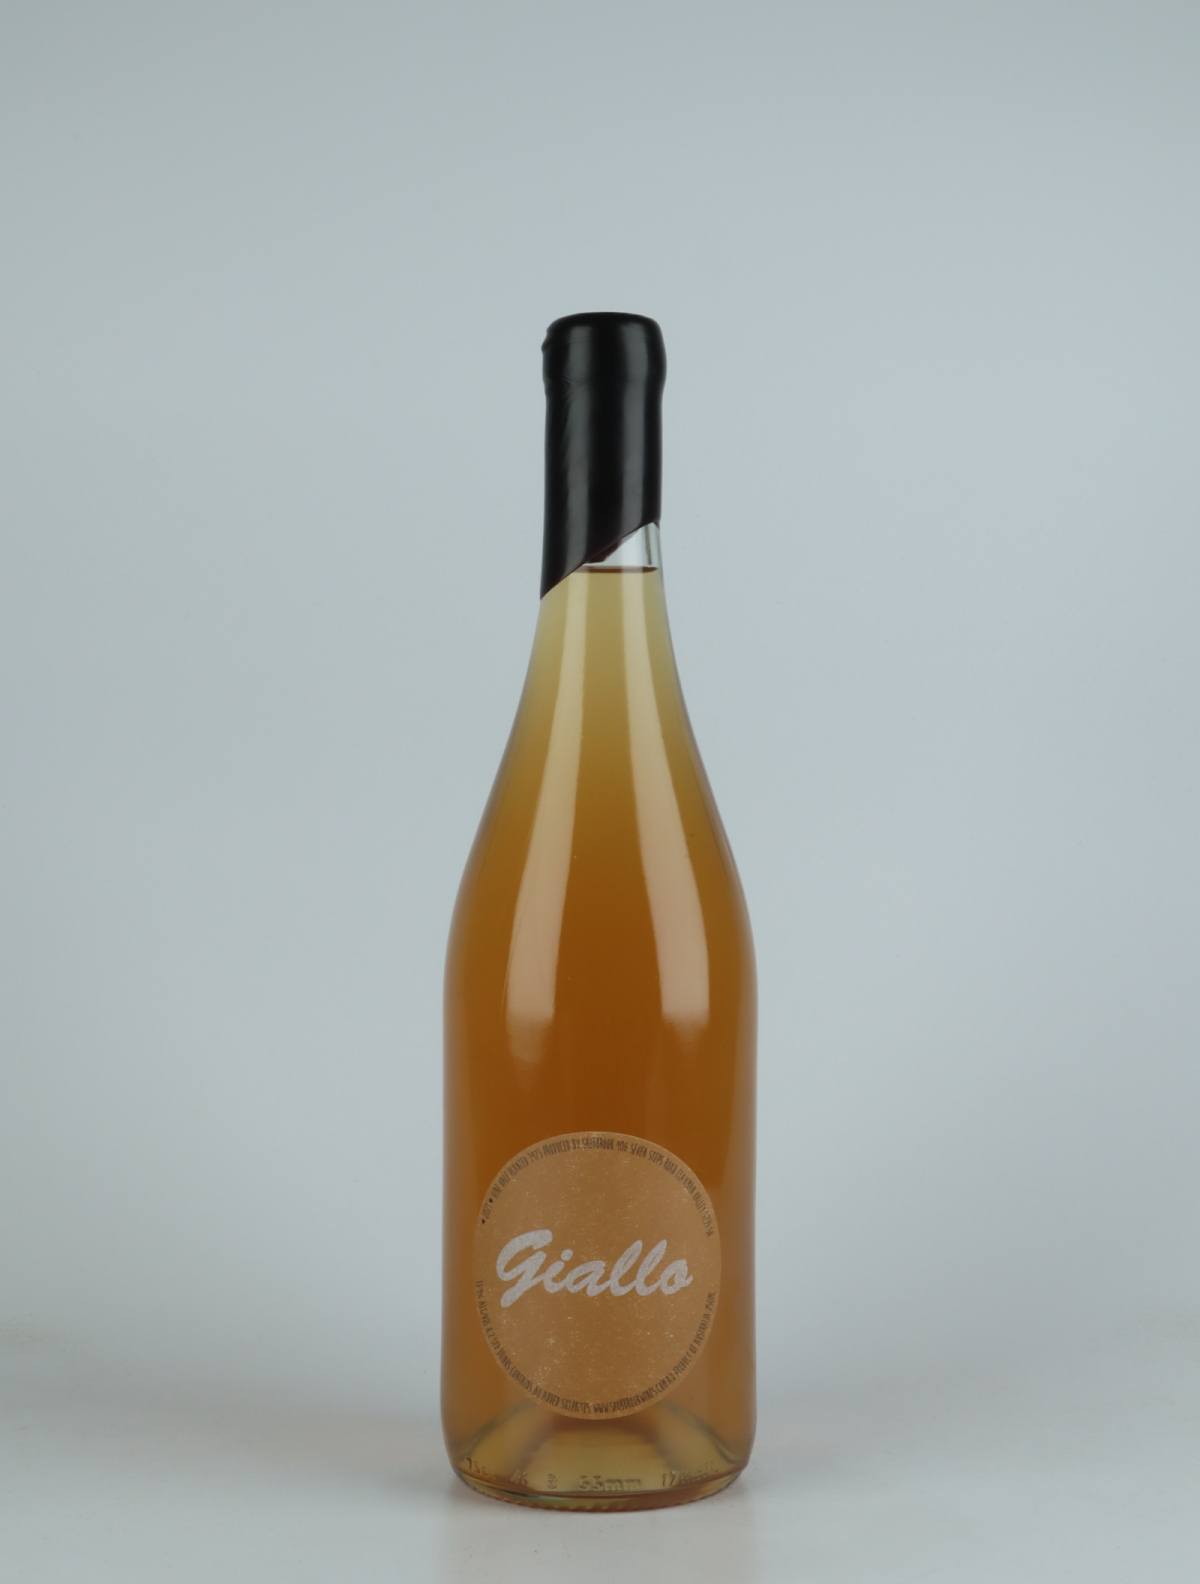 En flaske 2021 Giallo Orange vin fra Tom Shobbrook, Barossa Valley i Australien